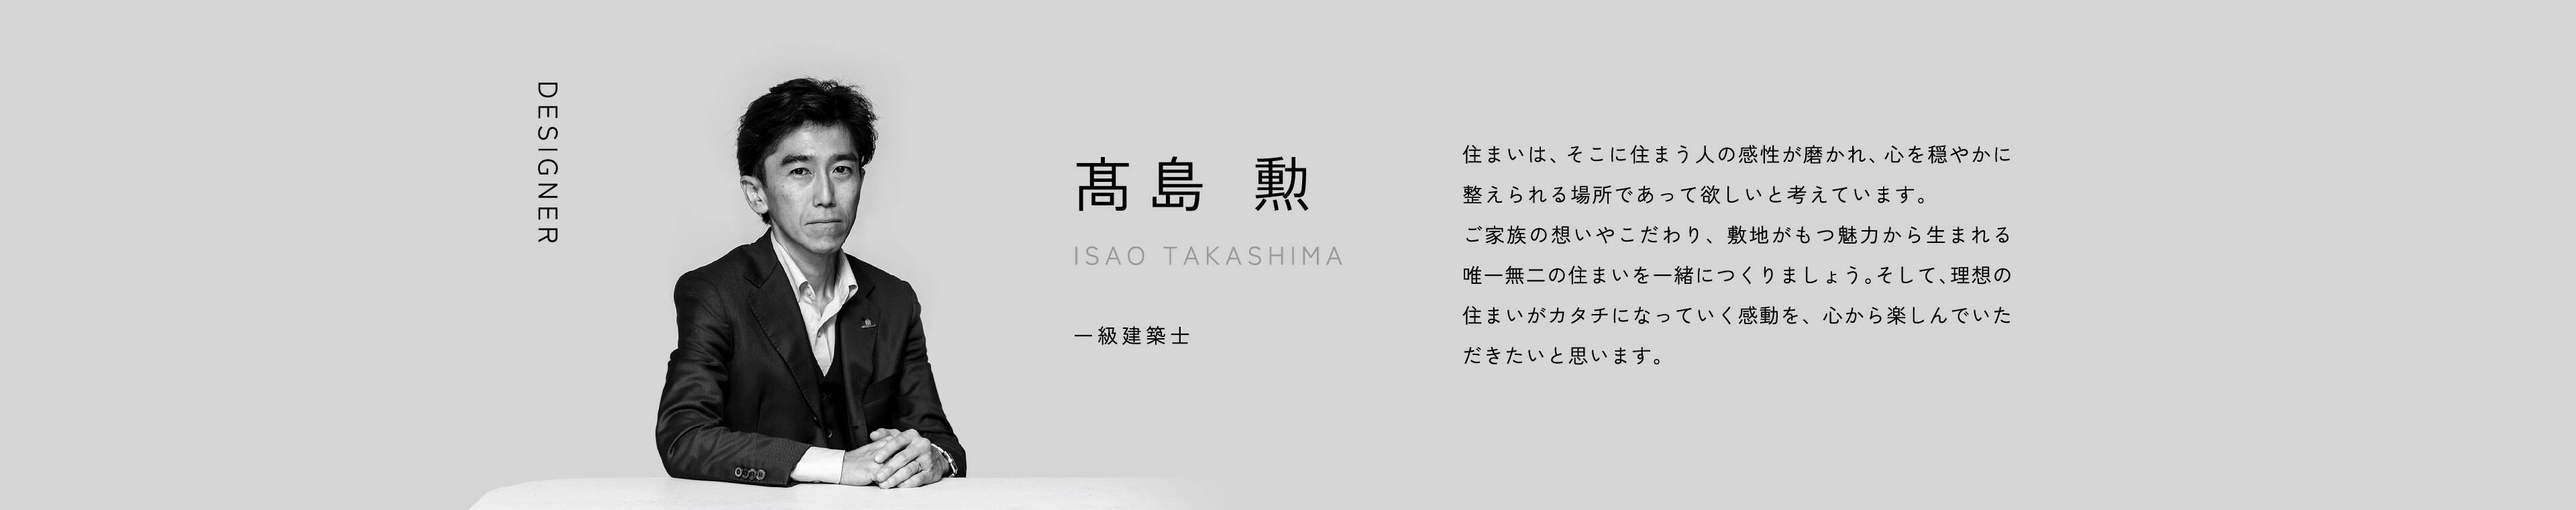 DESIGNER 髙島 勲 ISAO TAKASHIMA 一級建築士 住まいは、そこに住まう人の感性が磨かれ、心を穏やかに整えられる場所であって欲しいと考えています。ご家族の想いやこだわり、敷地がもつ魅力から生まれる唯一無二の住まいを一緒につくりましょう。そして、理想の住まいがカタチになっていく感動を、心から楽しんでいただきたいと思います。